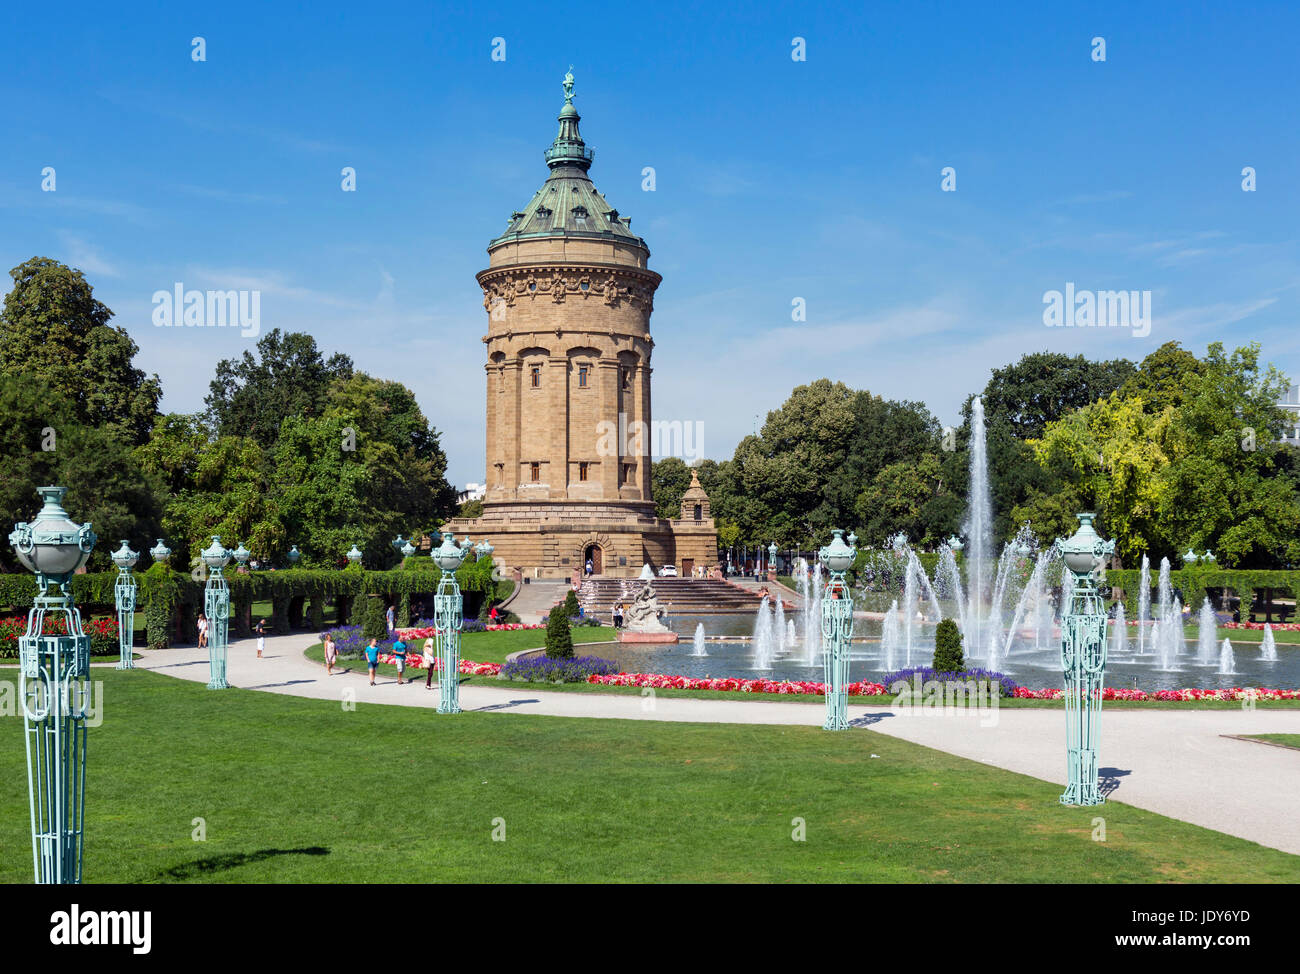 Der Wasserturm (Wasserturm), Friedrichsplatz, Mannheim, Baden-Württemberg, Deutschland Stockfoto